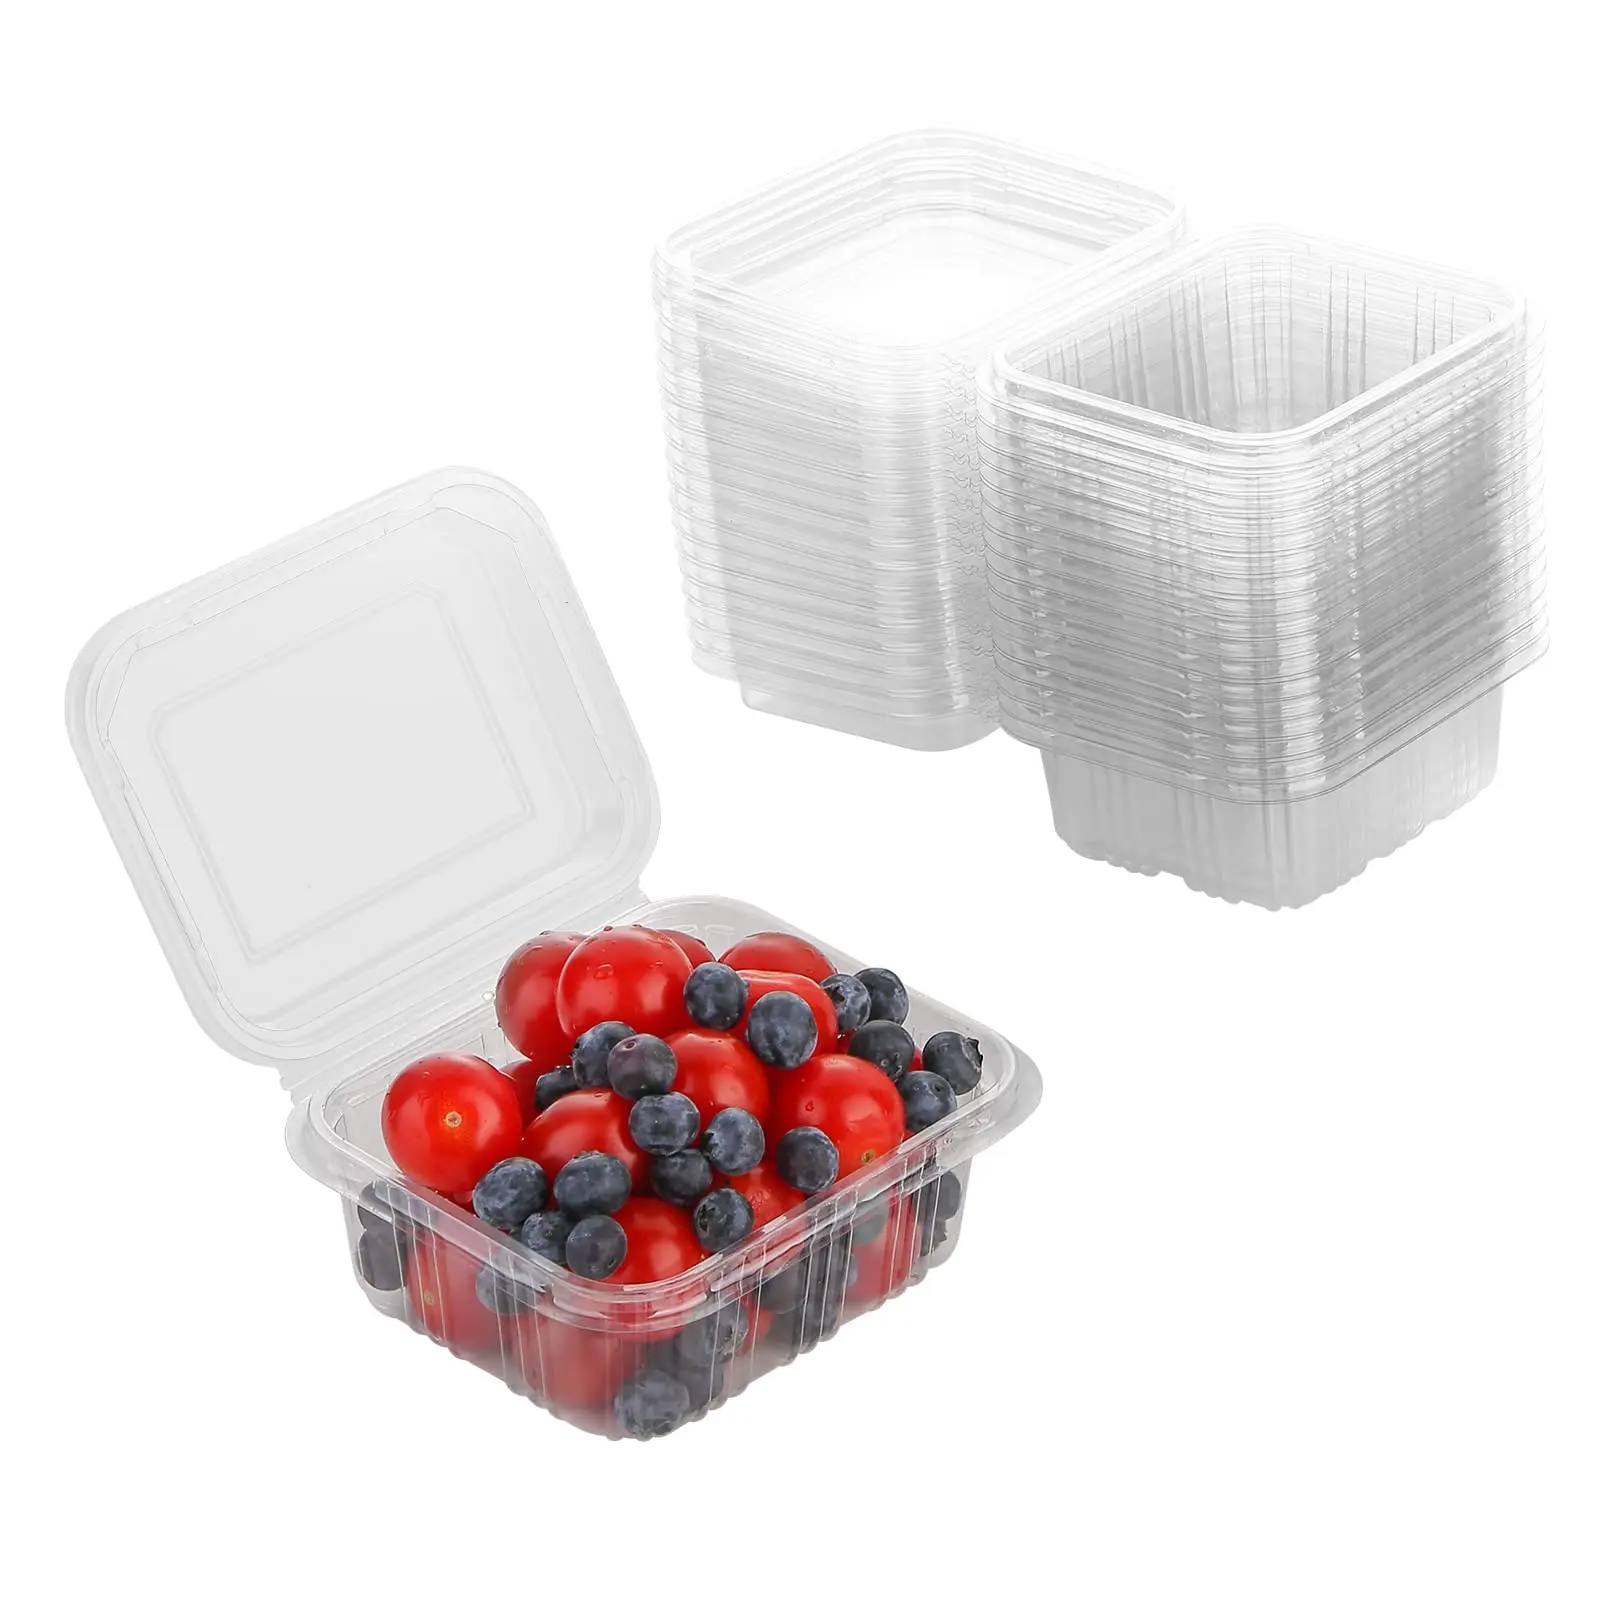 medidas caja fruta plastico - Cuántos kilos tiene una caja de fruta